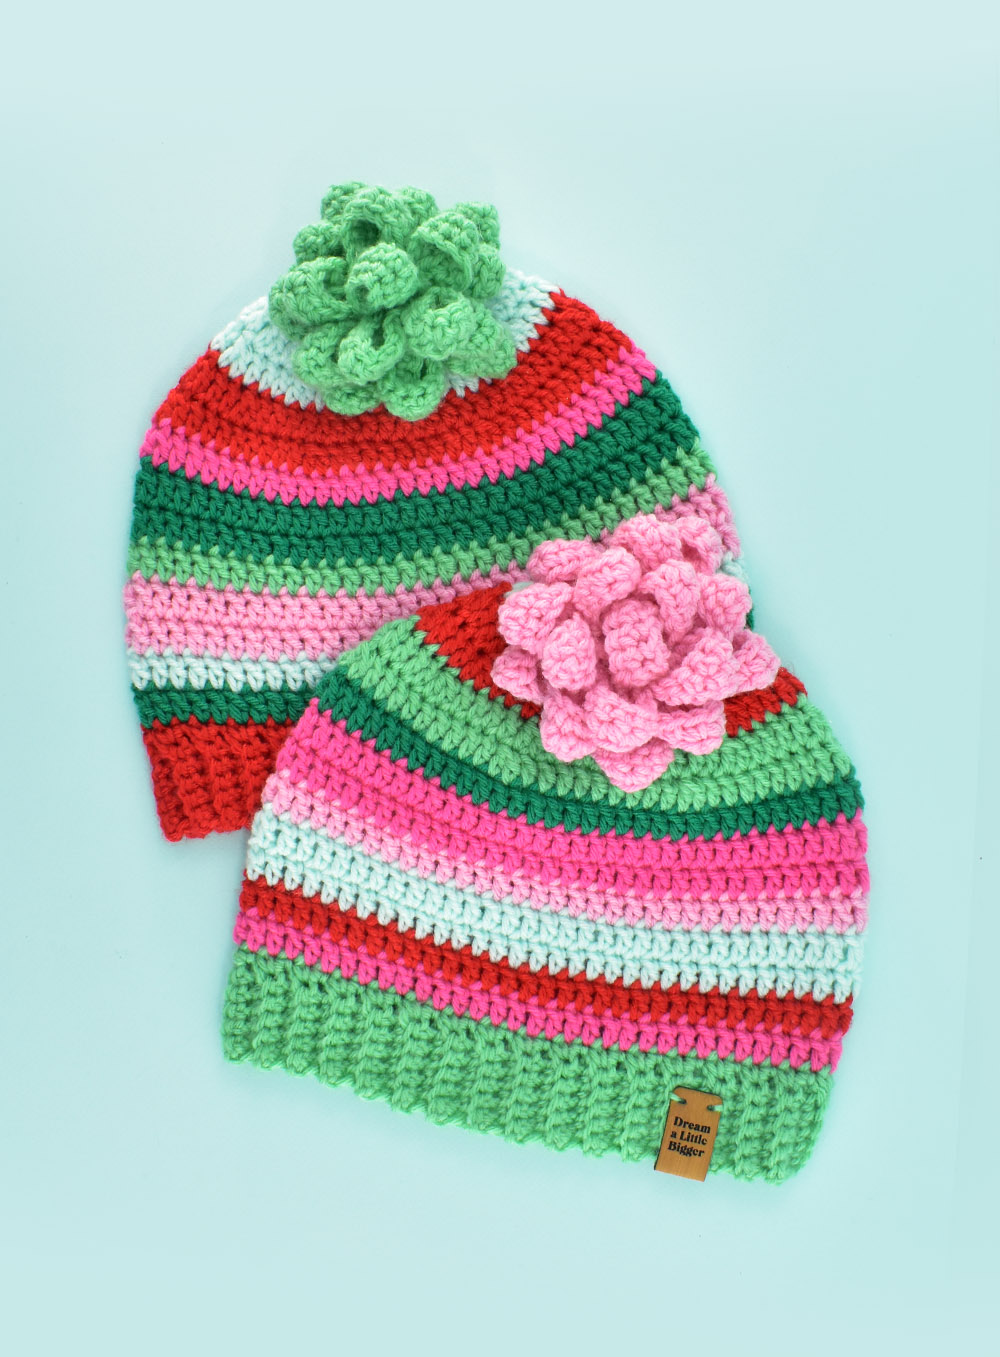 Last Minute Crochet Gifts Loops & Love Crochet